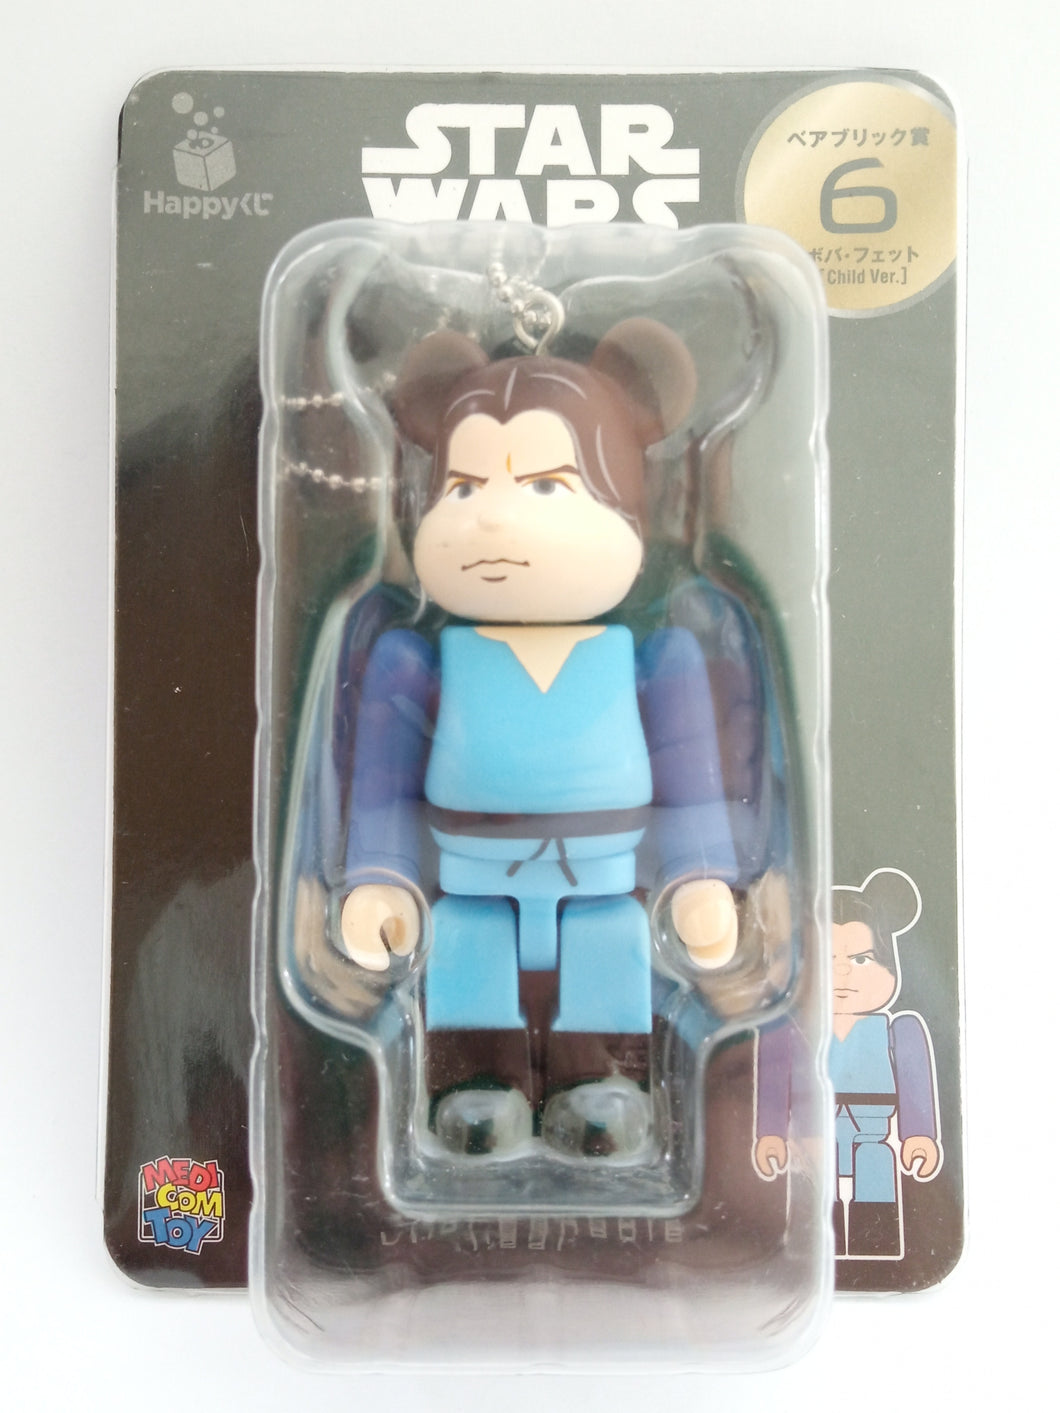 Star Wars Happy Lottery Bearbrick Toy Nº6 - Boba Fett Unbreakable Figure Keychain Mascot Key Holder Strap